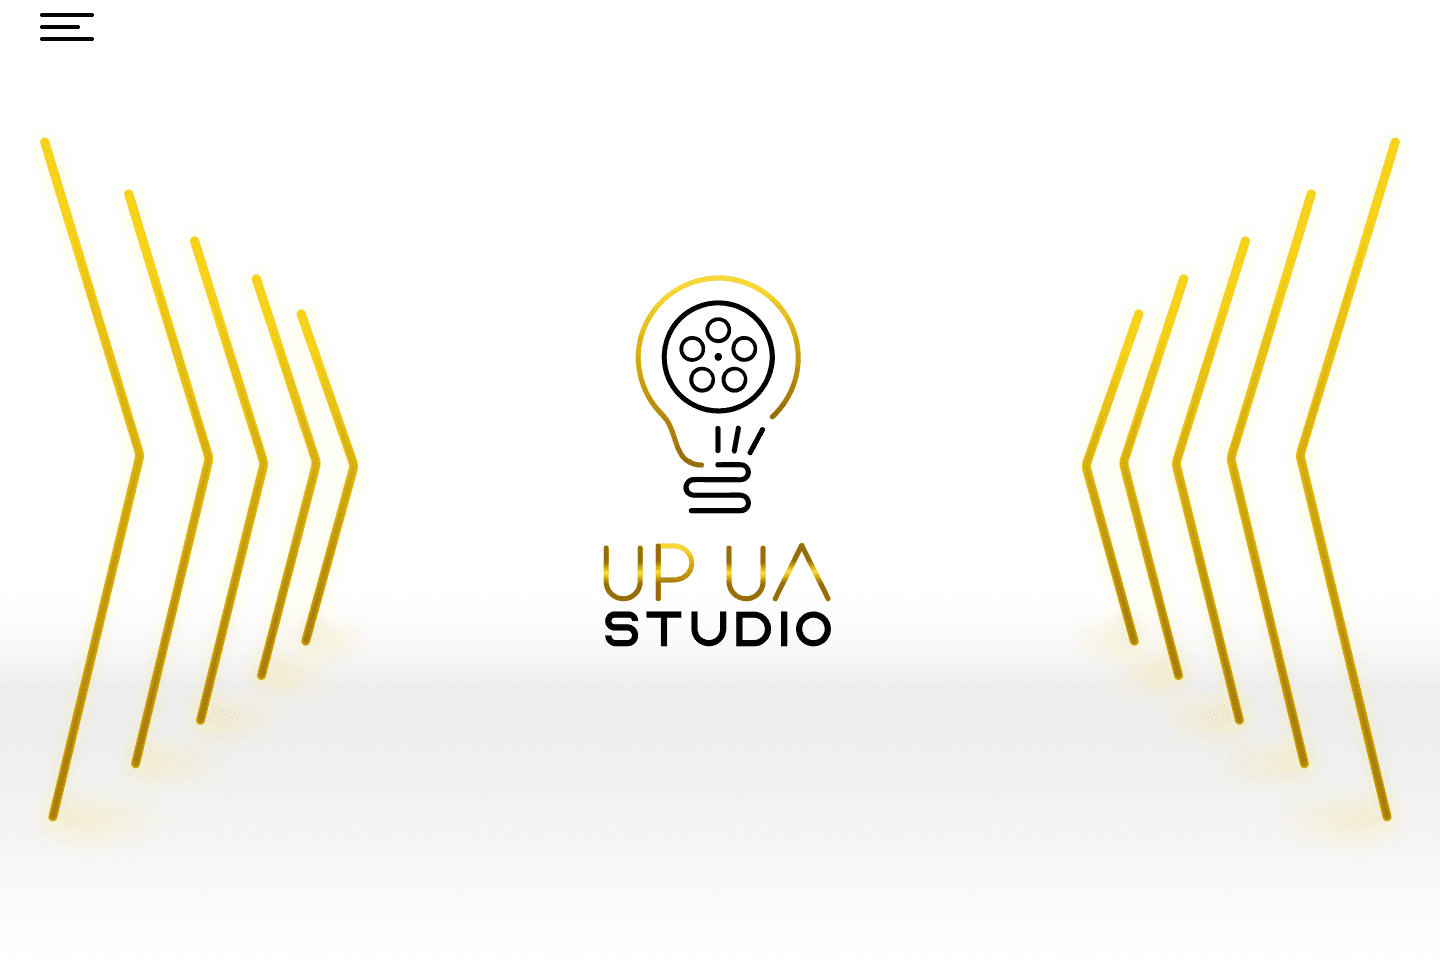 UP_UA_STUDIO バナー